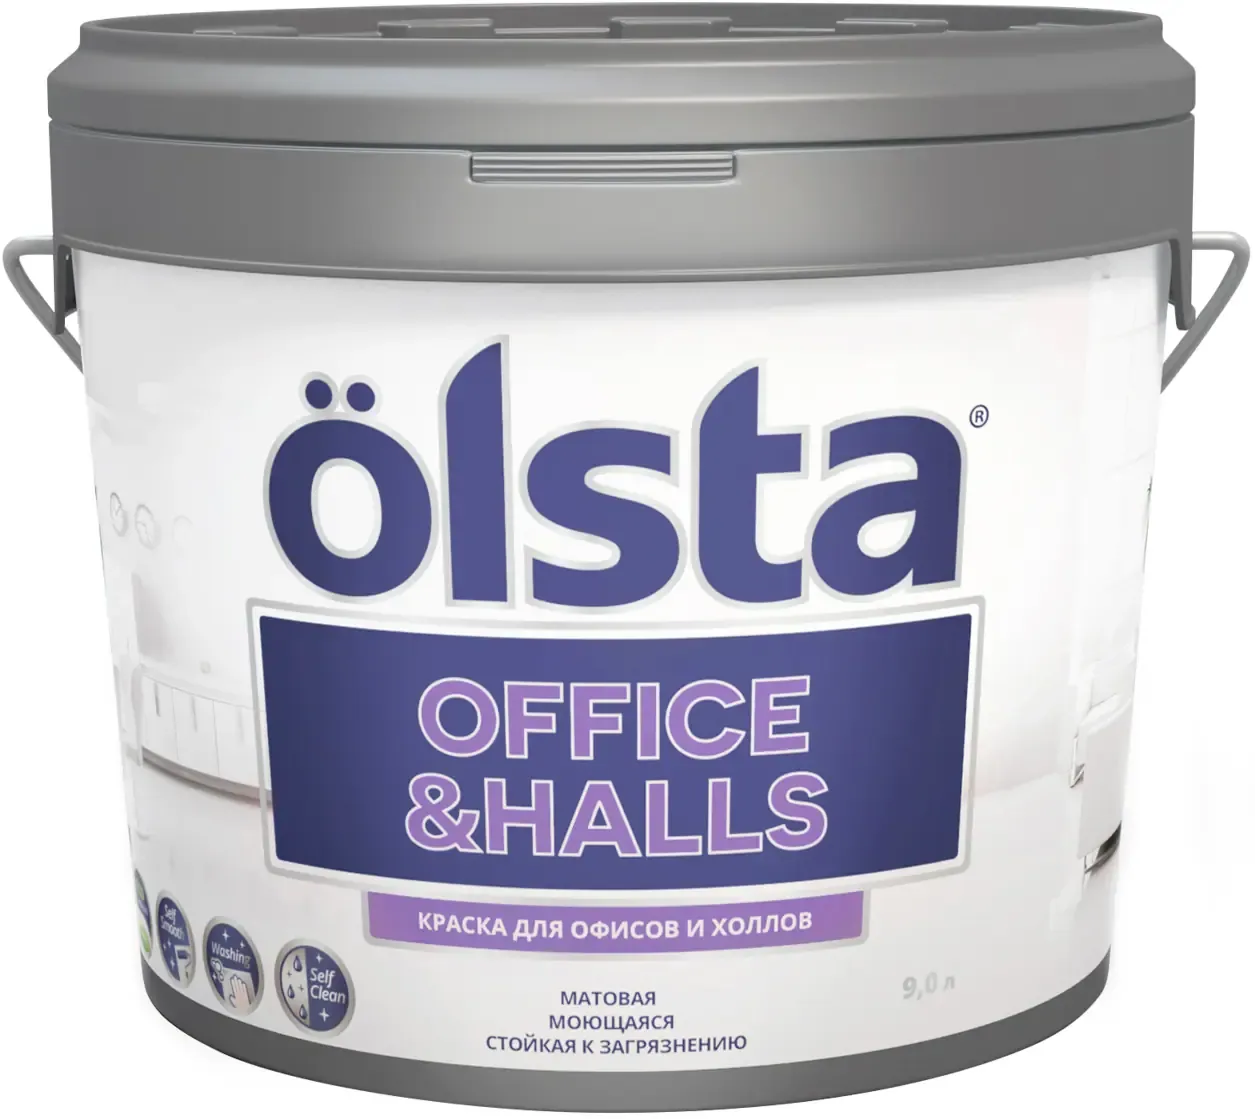 Краска для офисов и холлов Olsta Office & Halls 9 л кремовая светло серая база A №114A Soft Sense шелковисто матовая 01